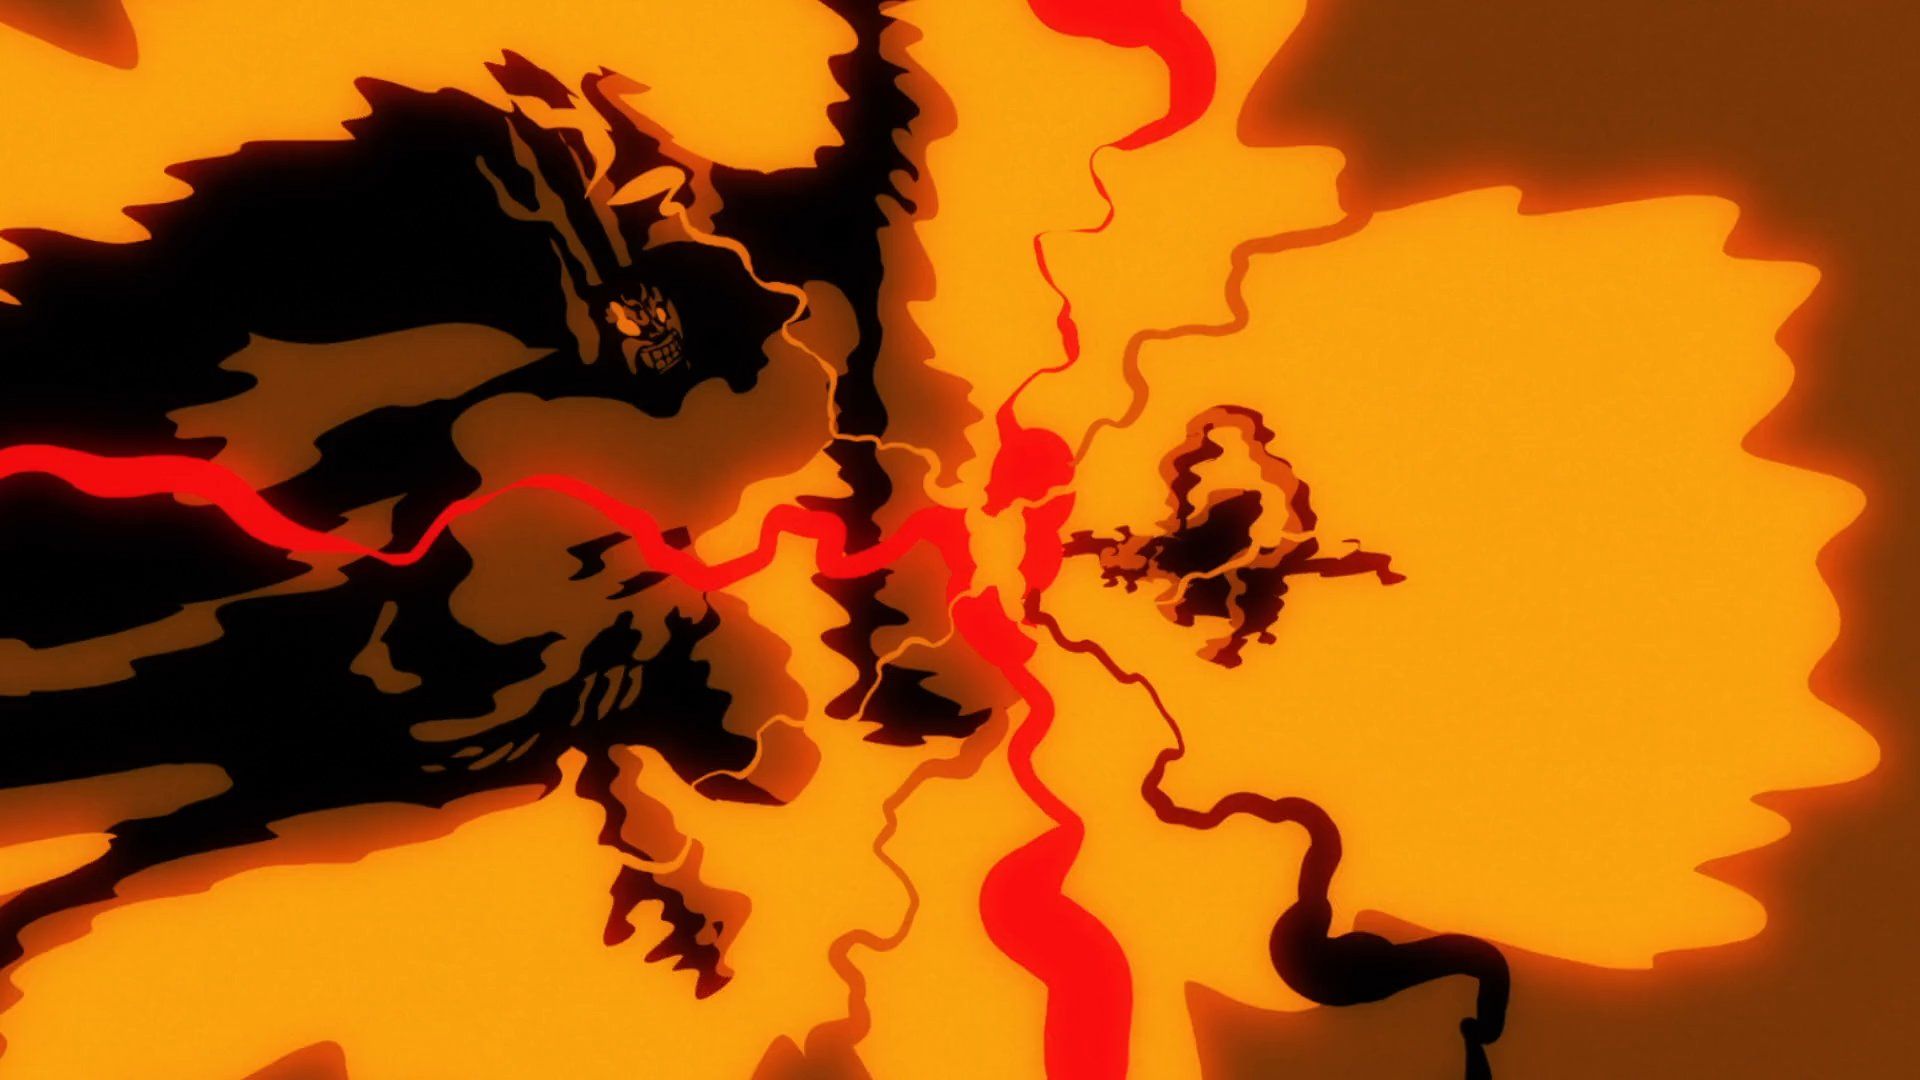 Capture D'Écran De L'Épisode D'Anime One Piece # 1028 Montre Une Image D'Impact De Luffy Combattant Kaido, Avec Luffy En Forme De Sa Forme Gear 5Th.